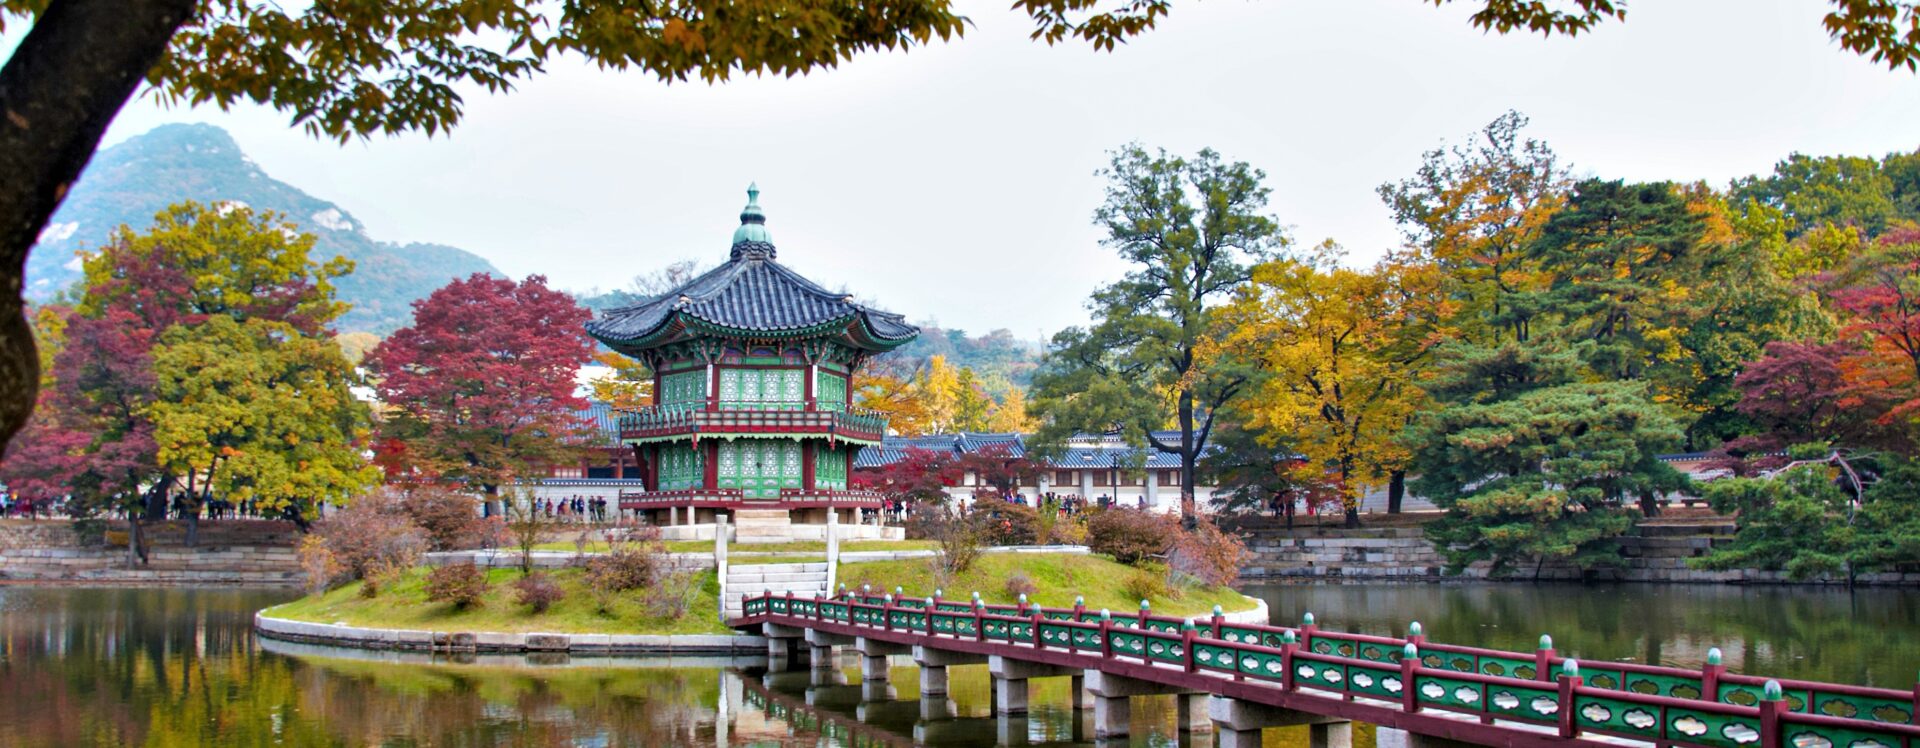 pavilhão hyangwonjeong, conjunto de palácios dentro de um grande parque em Seul, Coreia do Sul.